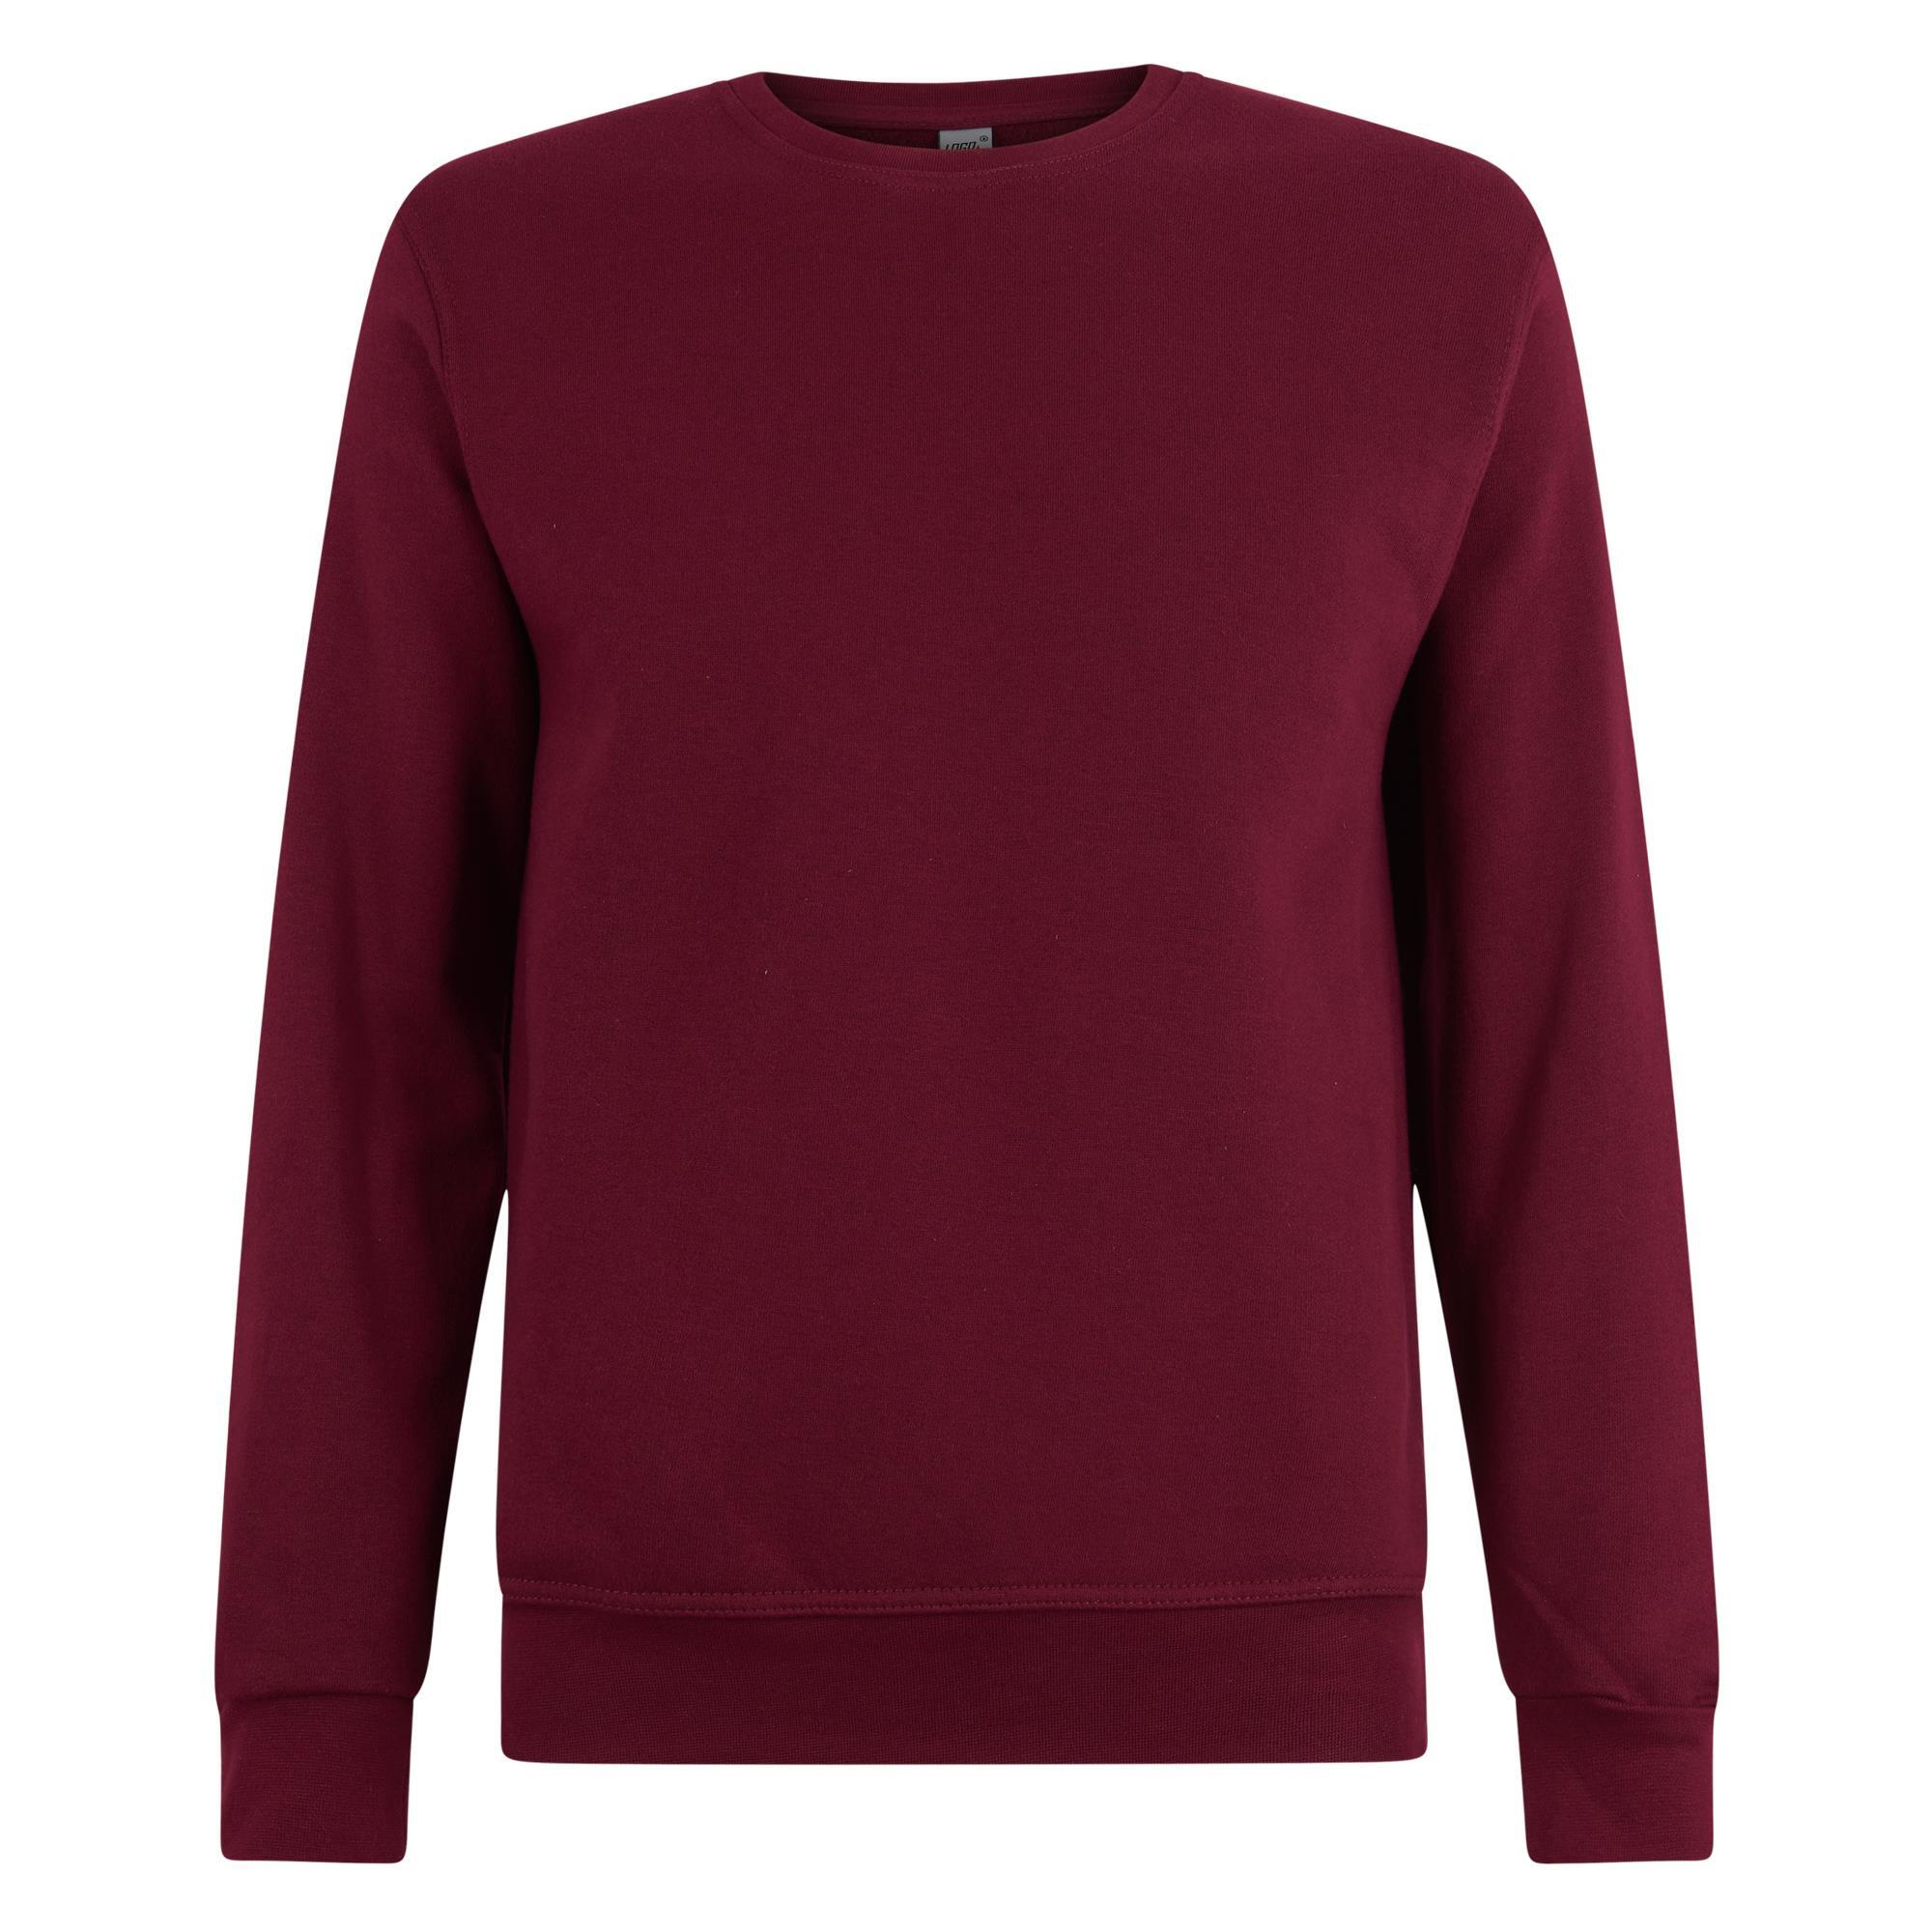 Sweater maroon voor mannen Logostar